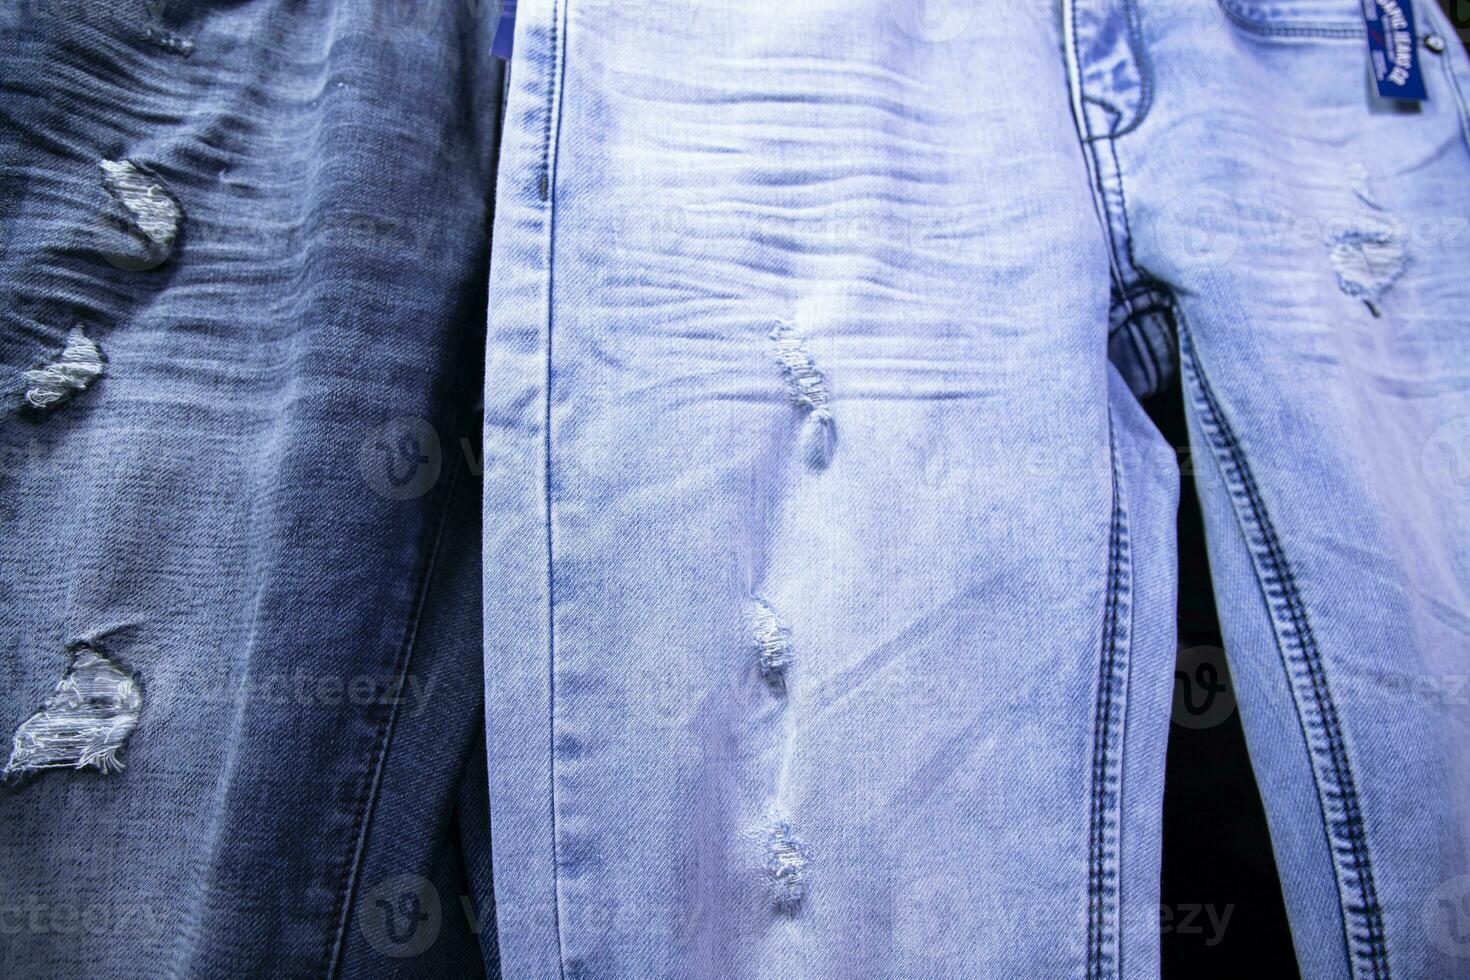 Vielfalt Jeans keuchen Muster Textur können Sein benutzt wie ein Hintergrund Hintergrund foto